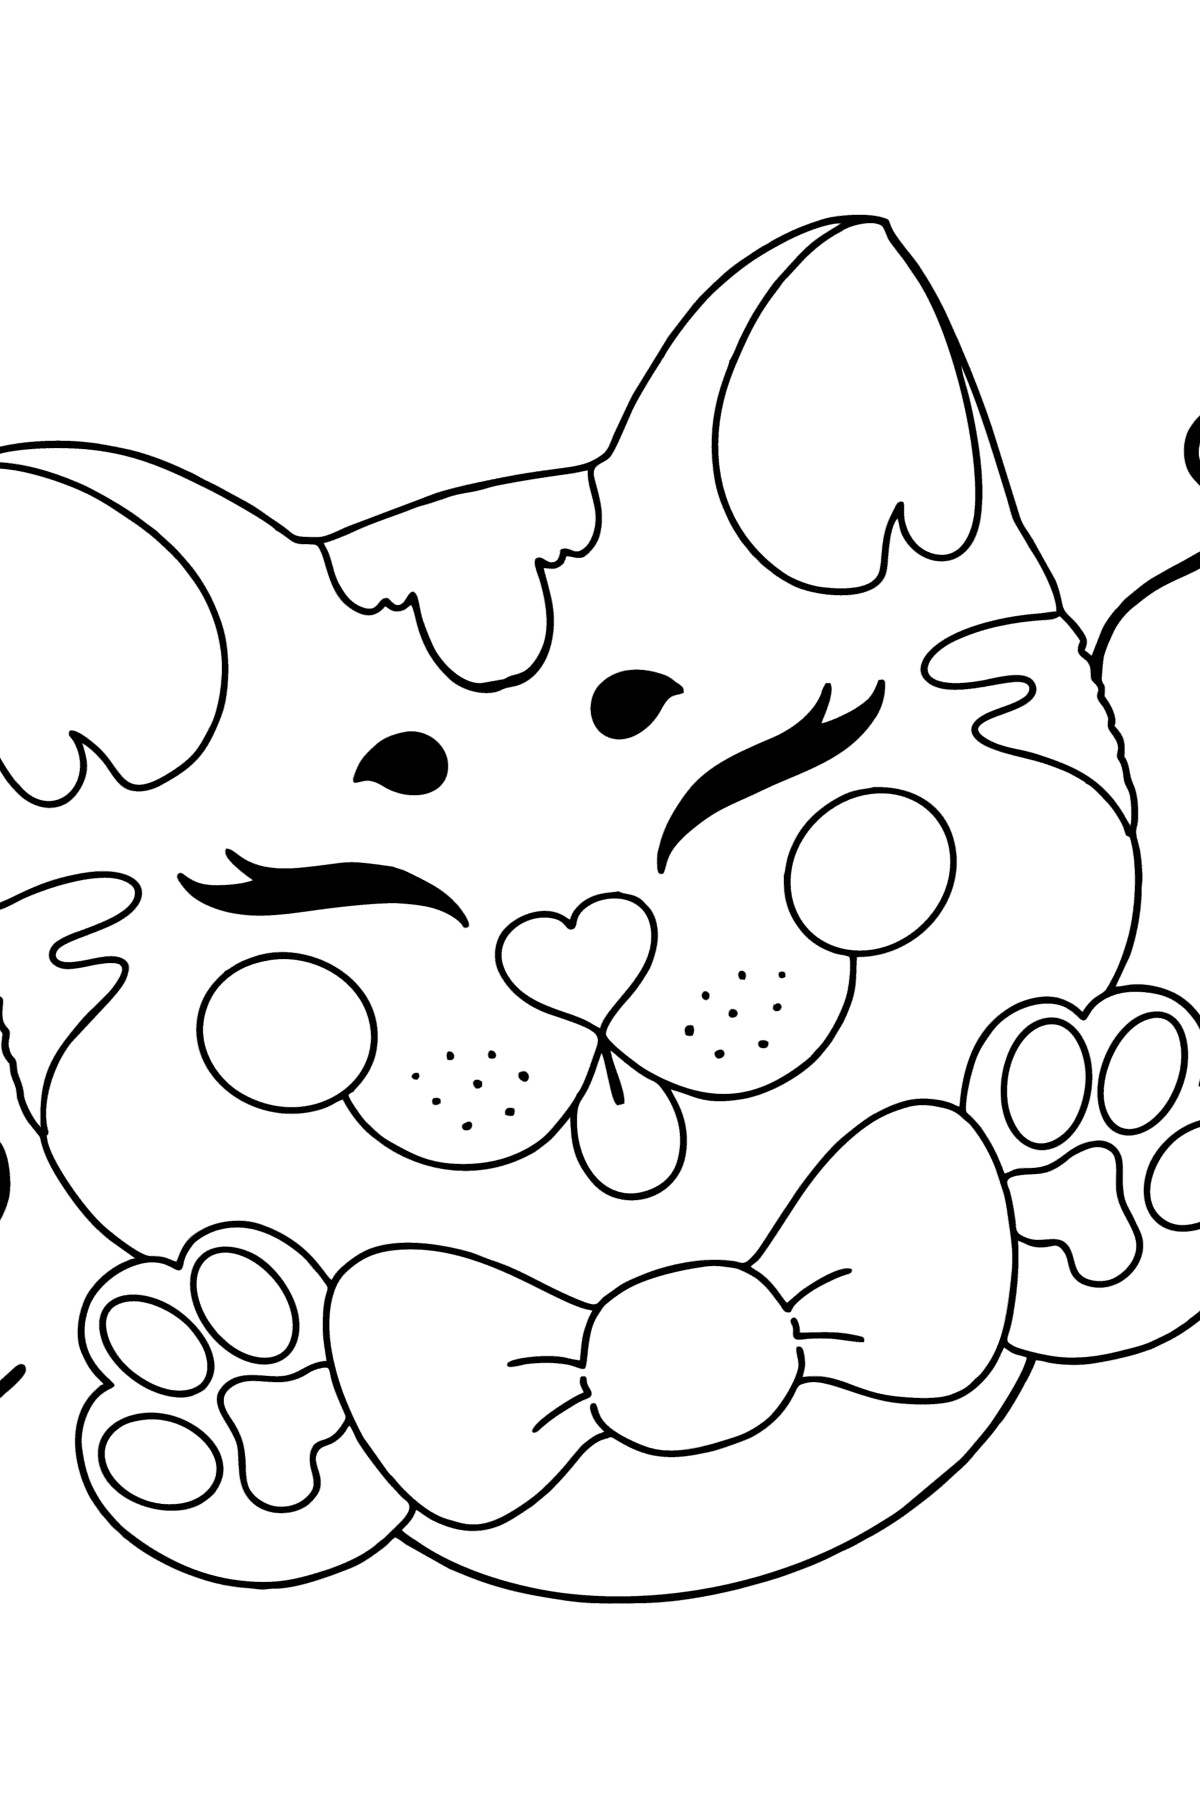 Disegno di Maschera da gatto da colorare - Disegni da colorare per bambini